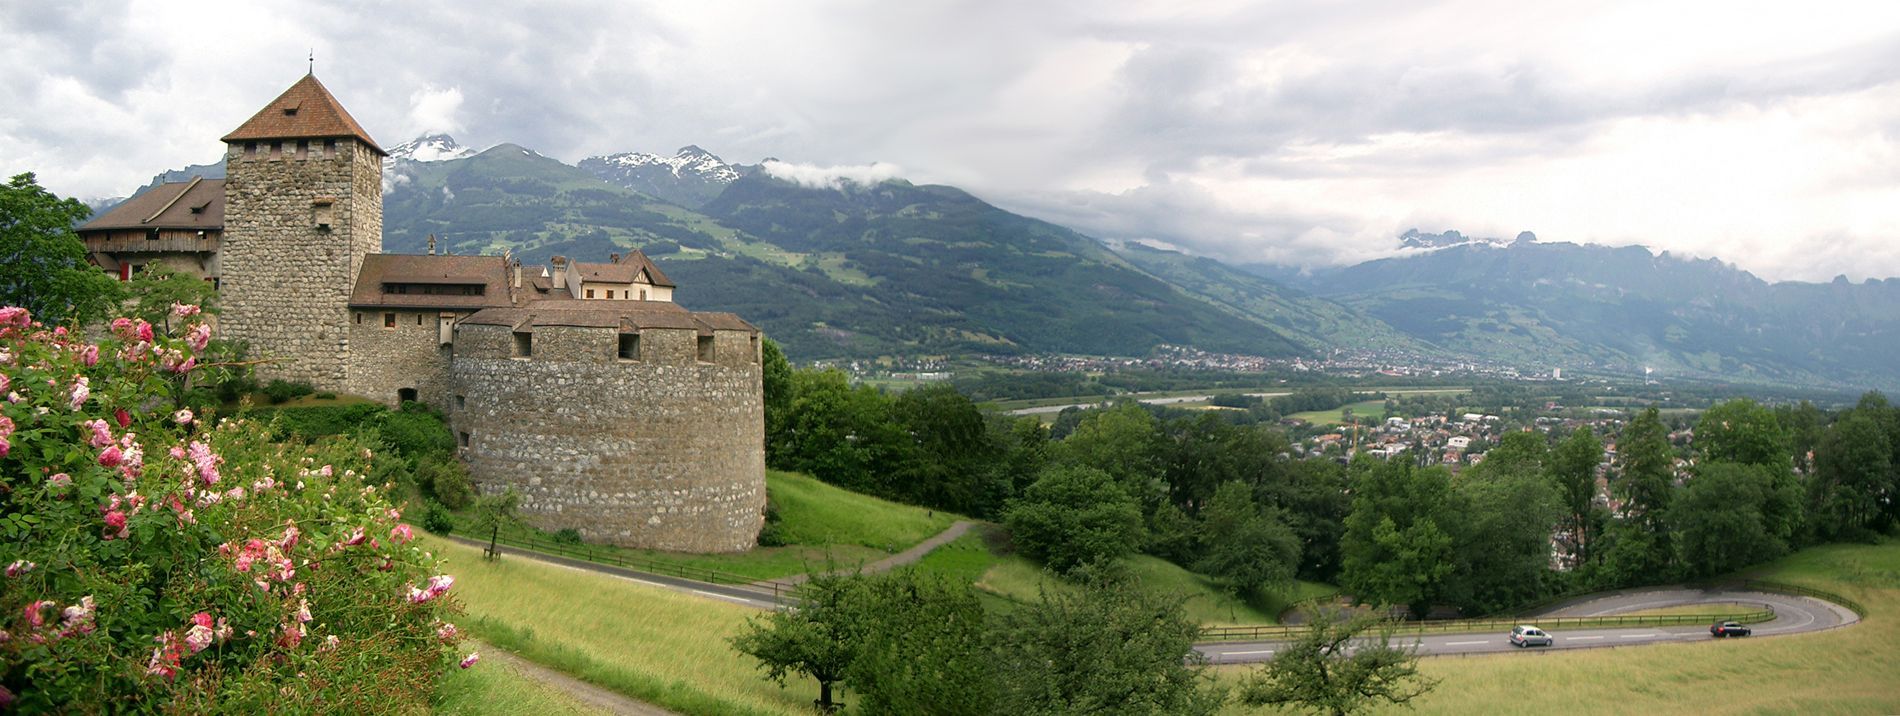 Date for monday in Liechtenstein